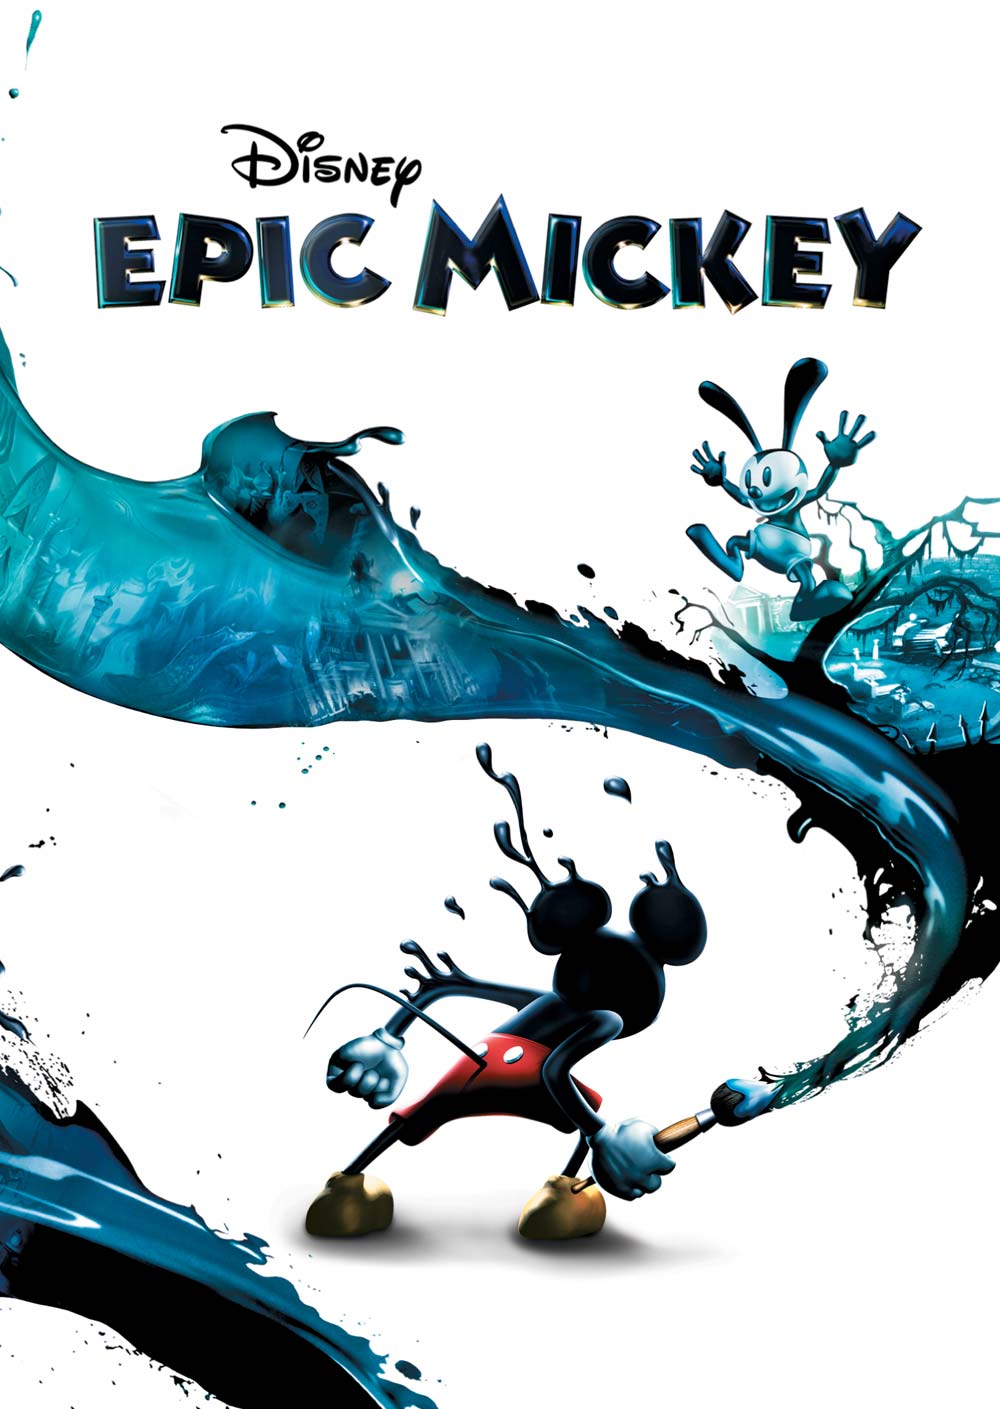 Disney Epic Mickey – Wii